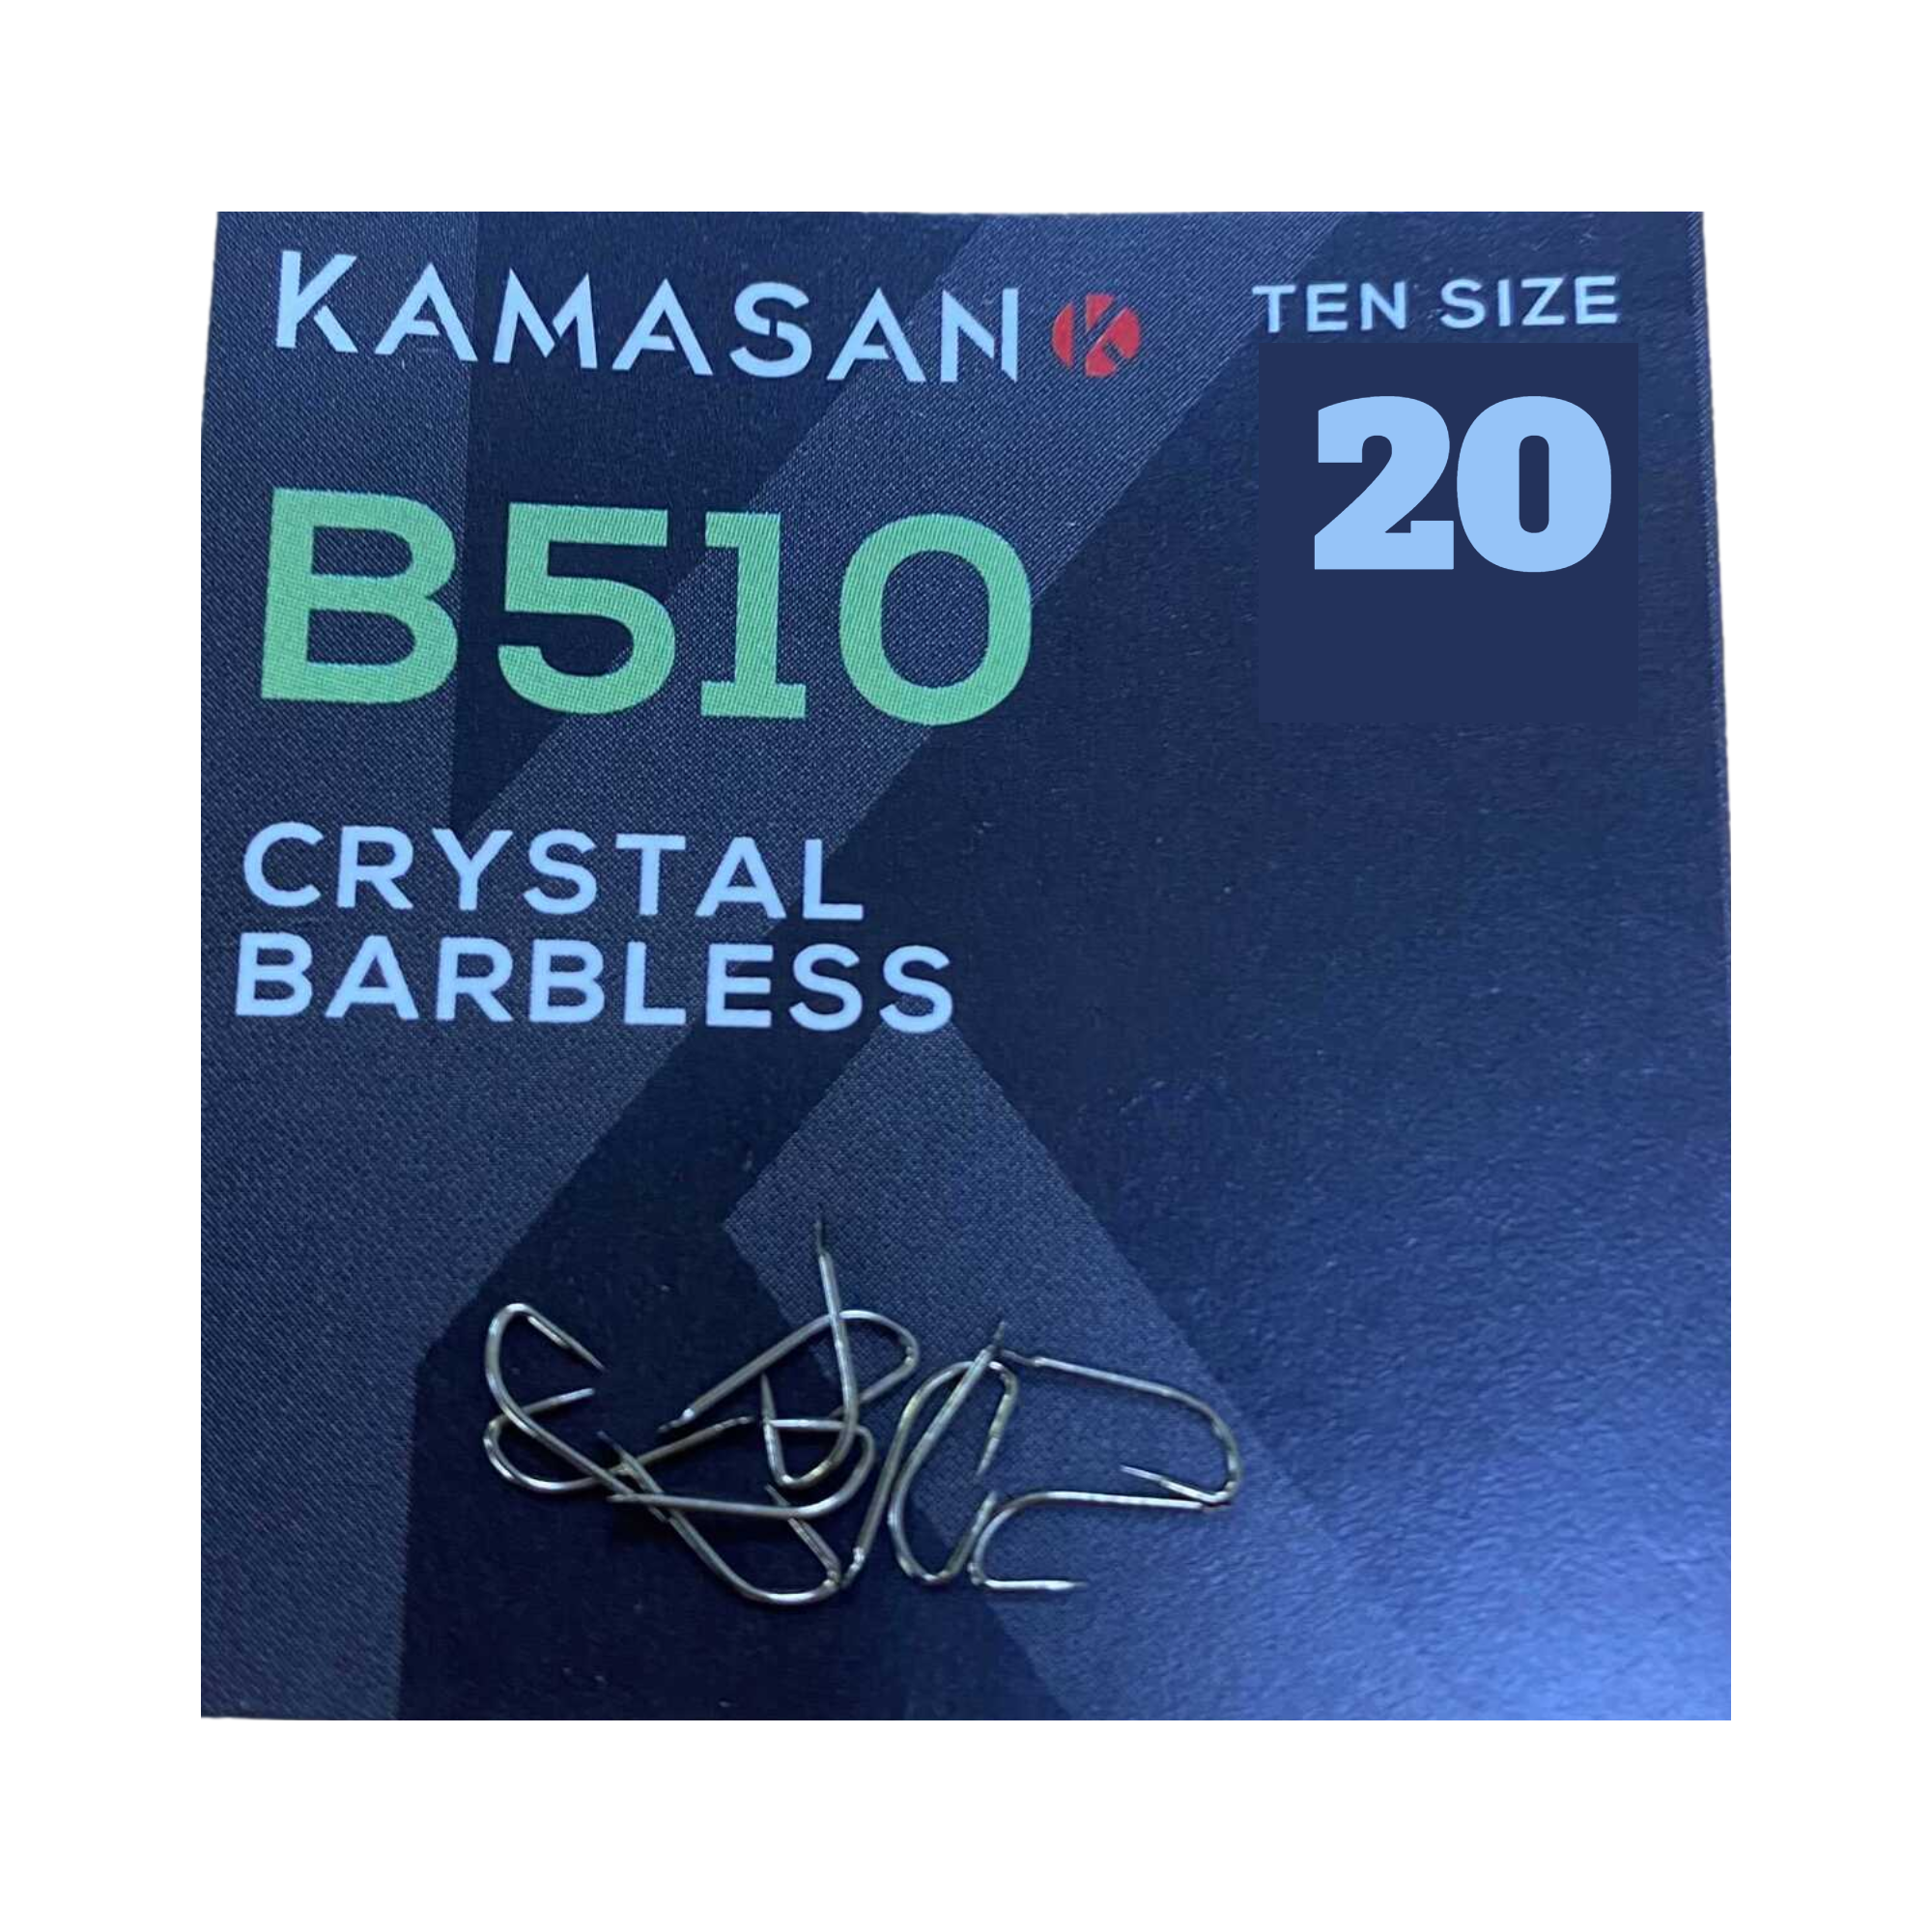 Kamasan B981 Specimen Eyed Hooks Size 18 & 20 Carp Coarse Hooks NEW 